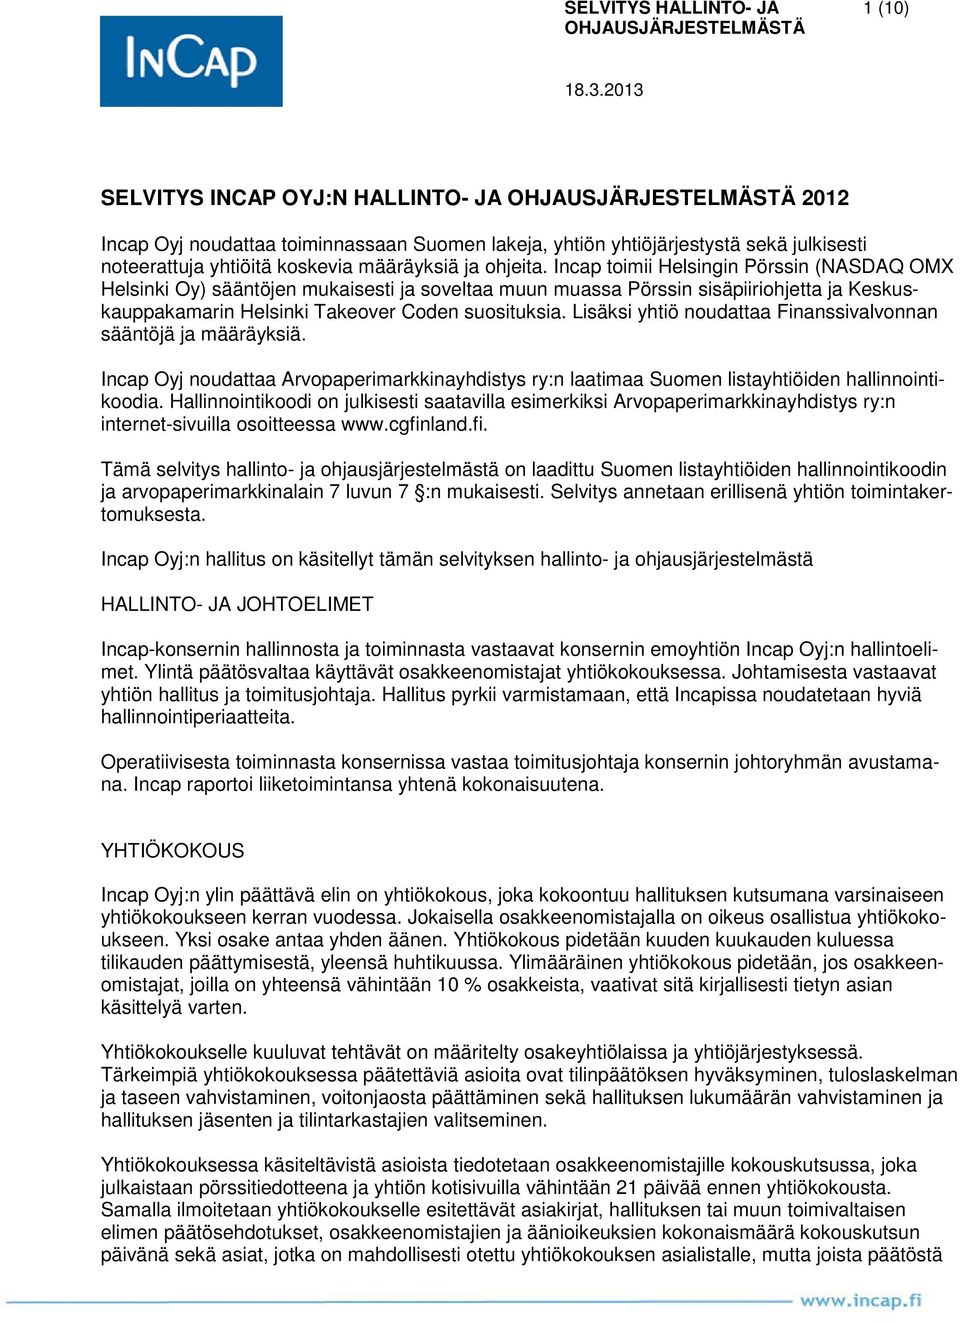 Lisäksi yhtiö noudattaa Finanssivalvonnan sääntöjä ja määräyksiä. Incap Oyj noudattaa Arvopaperimarkkinayhdistys ry:n laatimaa Suomen listayhtiöiden hallinnointikoodia.